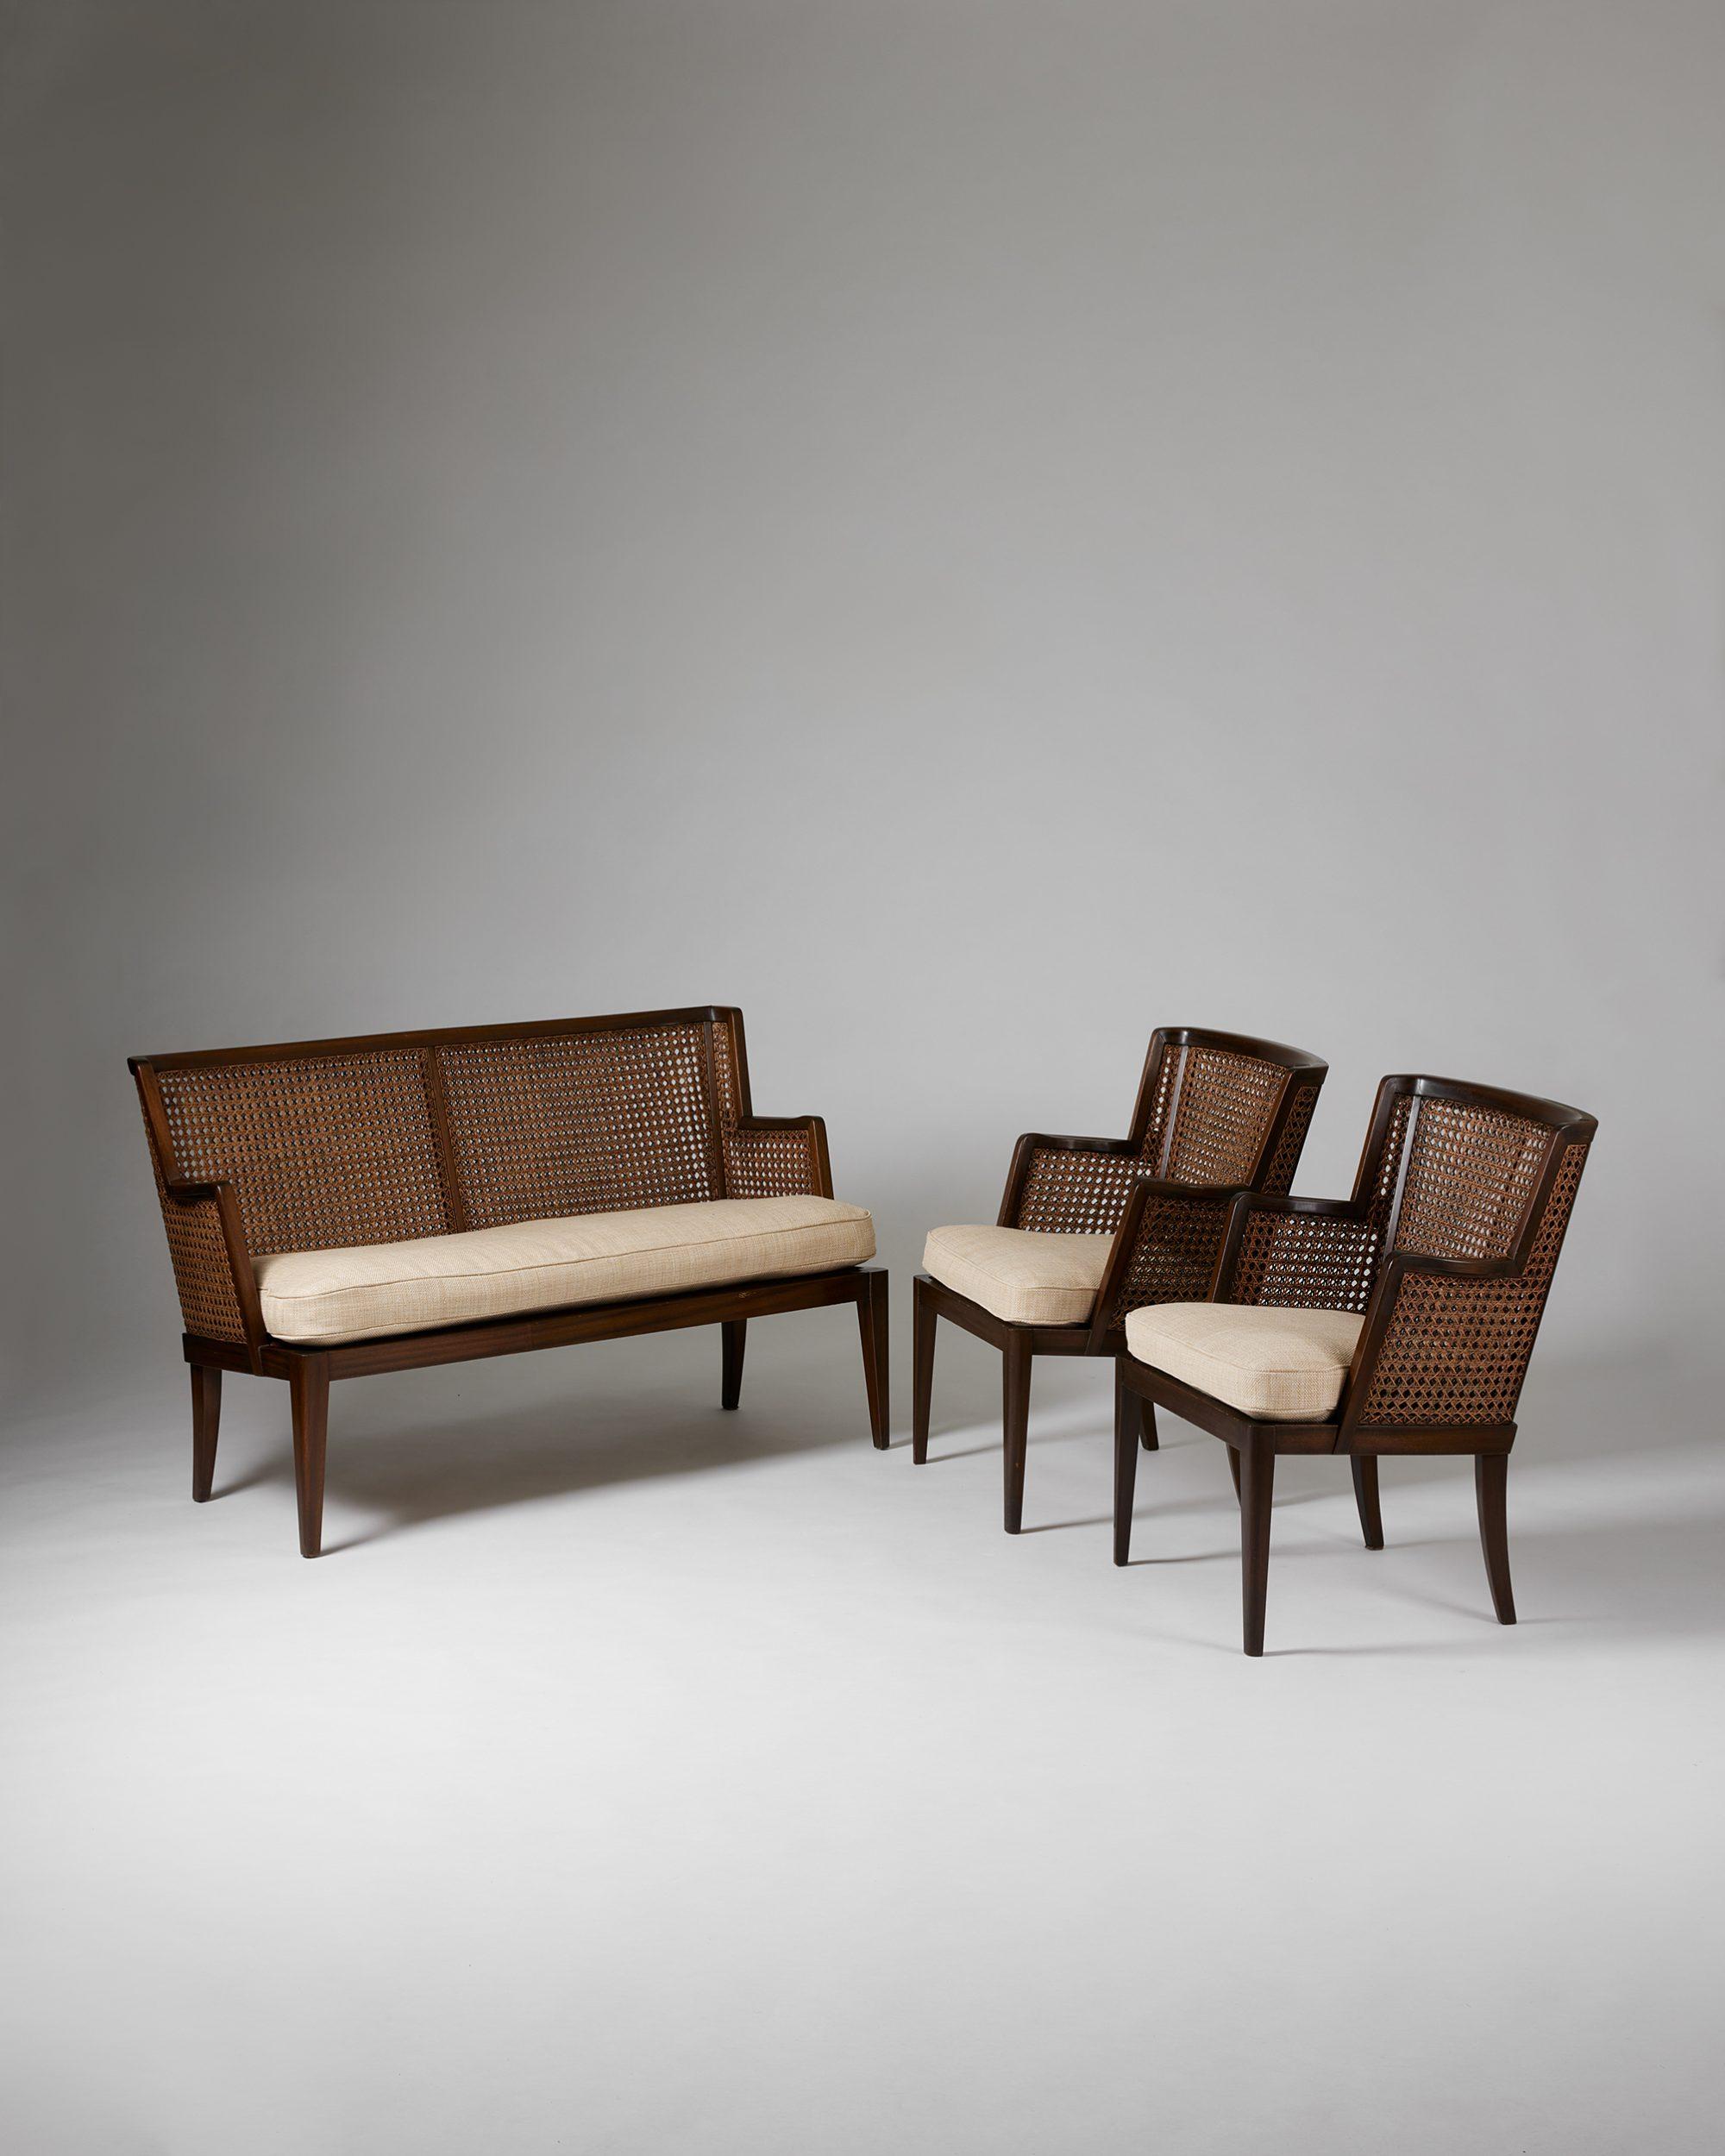 Ein Paar Sessel und ein Sofa, anoynmous für Paul Boman,
Finnland, 1930er Jahre.

Gebeiztes Birkenholz und Rattan, gepolsterte Kissen.

Abmessungen der Stühle:
H: 79 cm / 2' 7 1/4''
W: 60 cm / 23 3/4''
T: 65,5 cm / 2' 1 3/4''
SH: 43 cm /